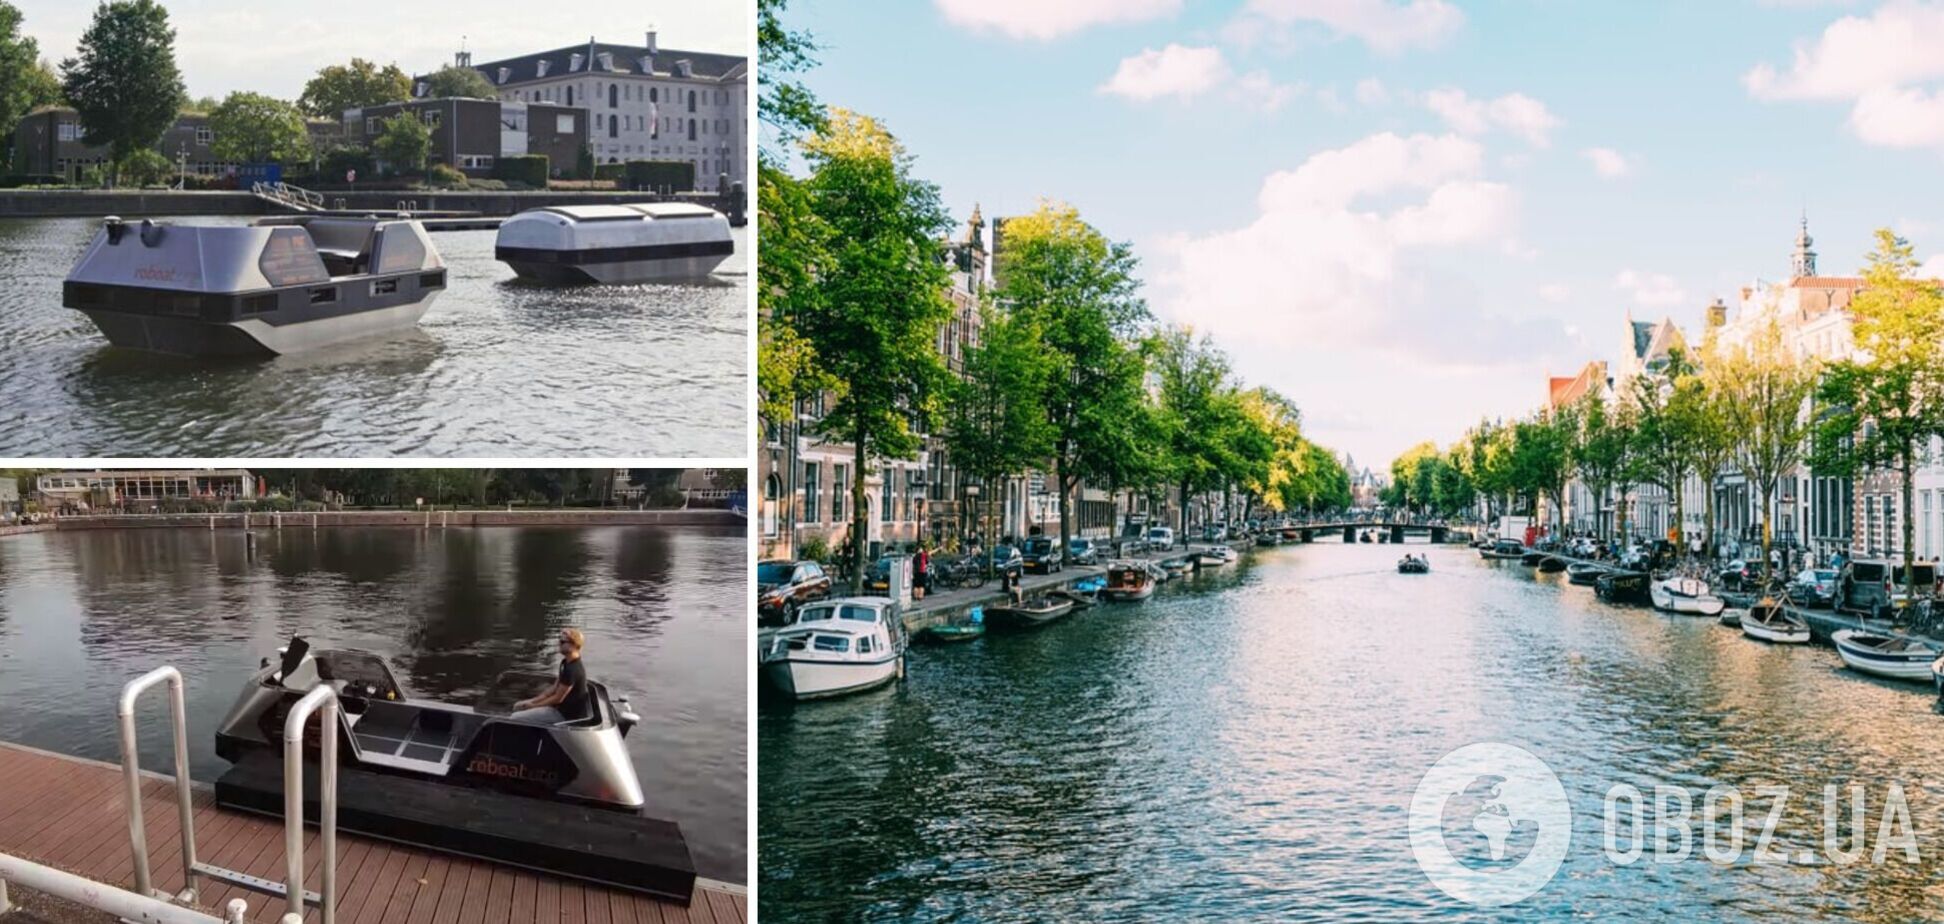 В Амстердаме запустили первое в мире беспилотное водное такси. Фото, видео и все подробности